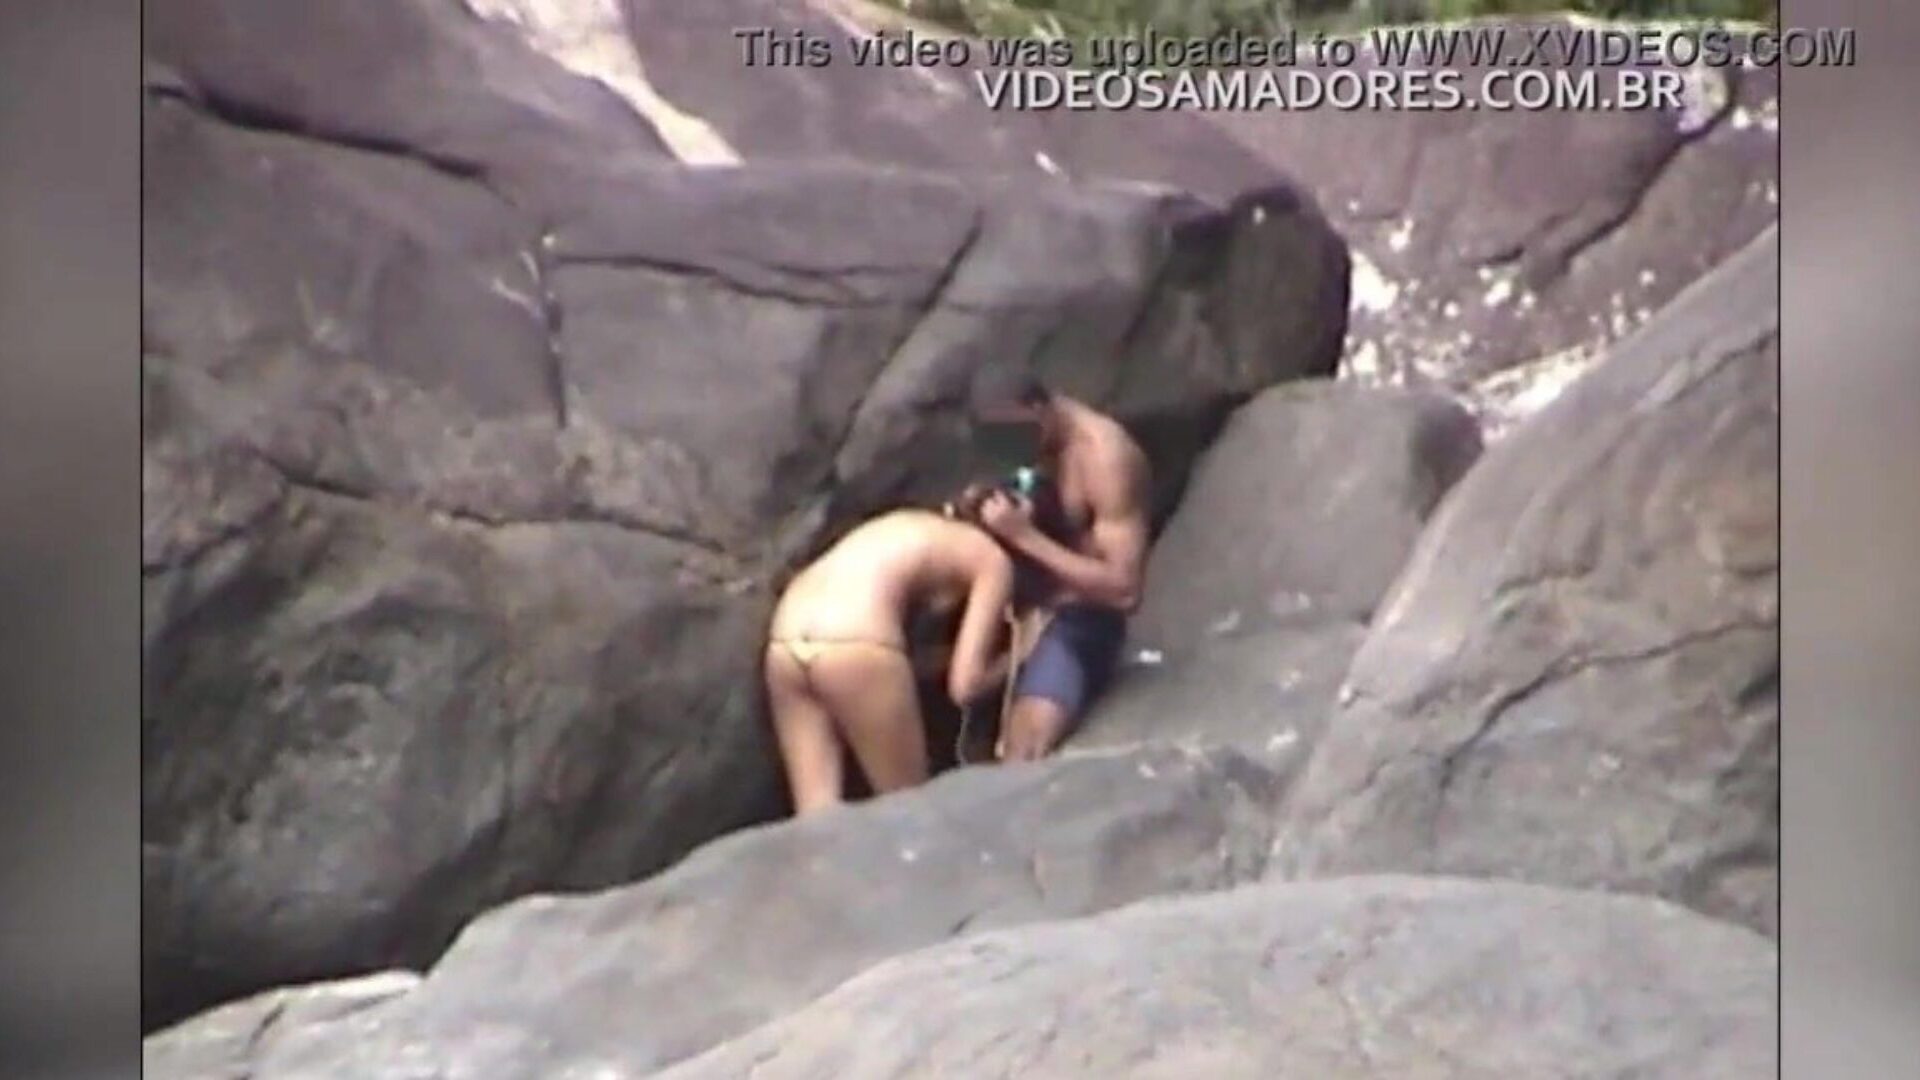 coppia fa un pompino in spiaggia e viene filmata senza rendersene conto